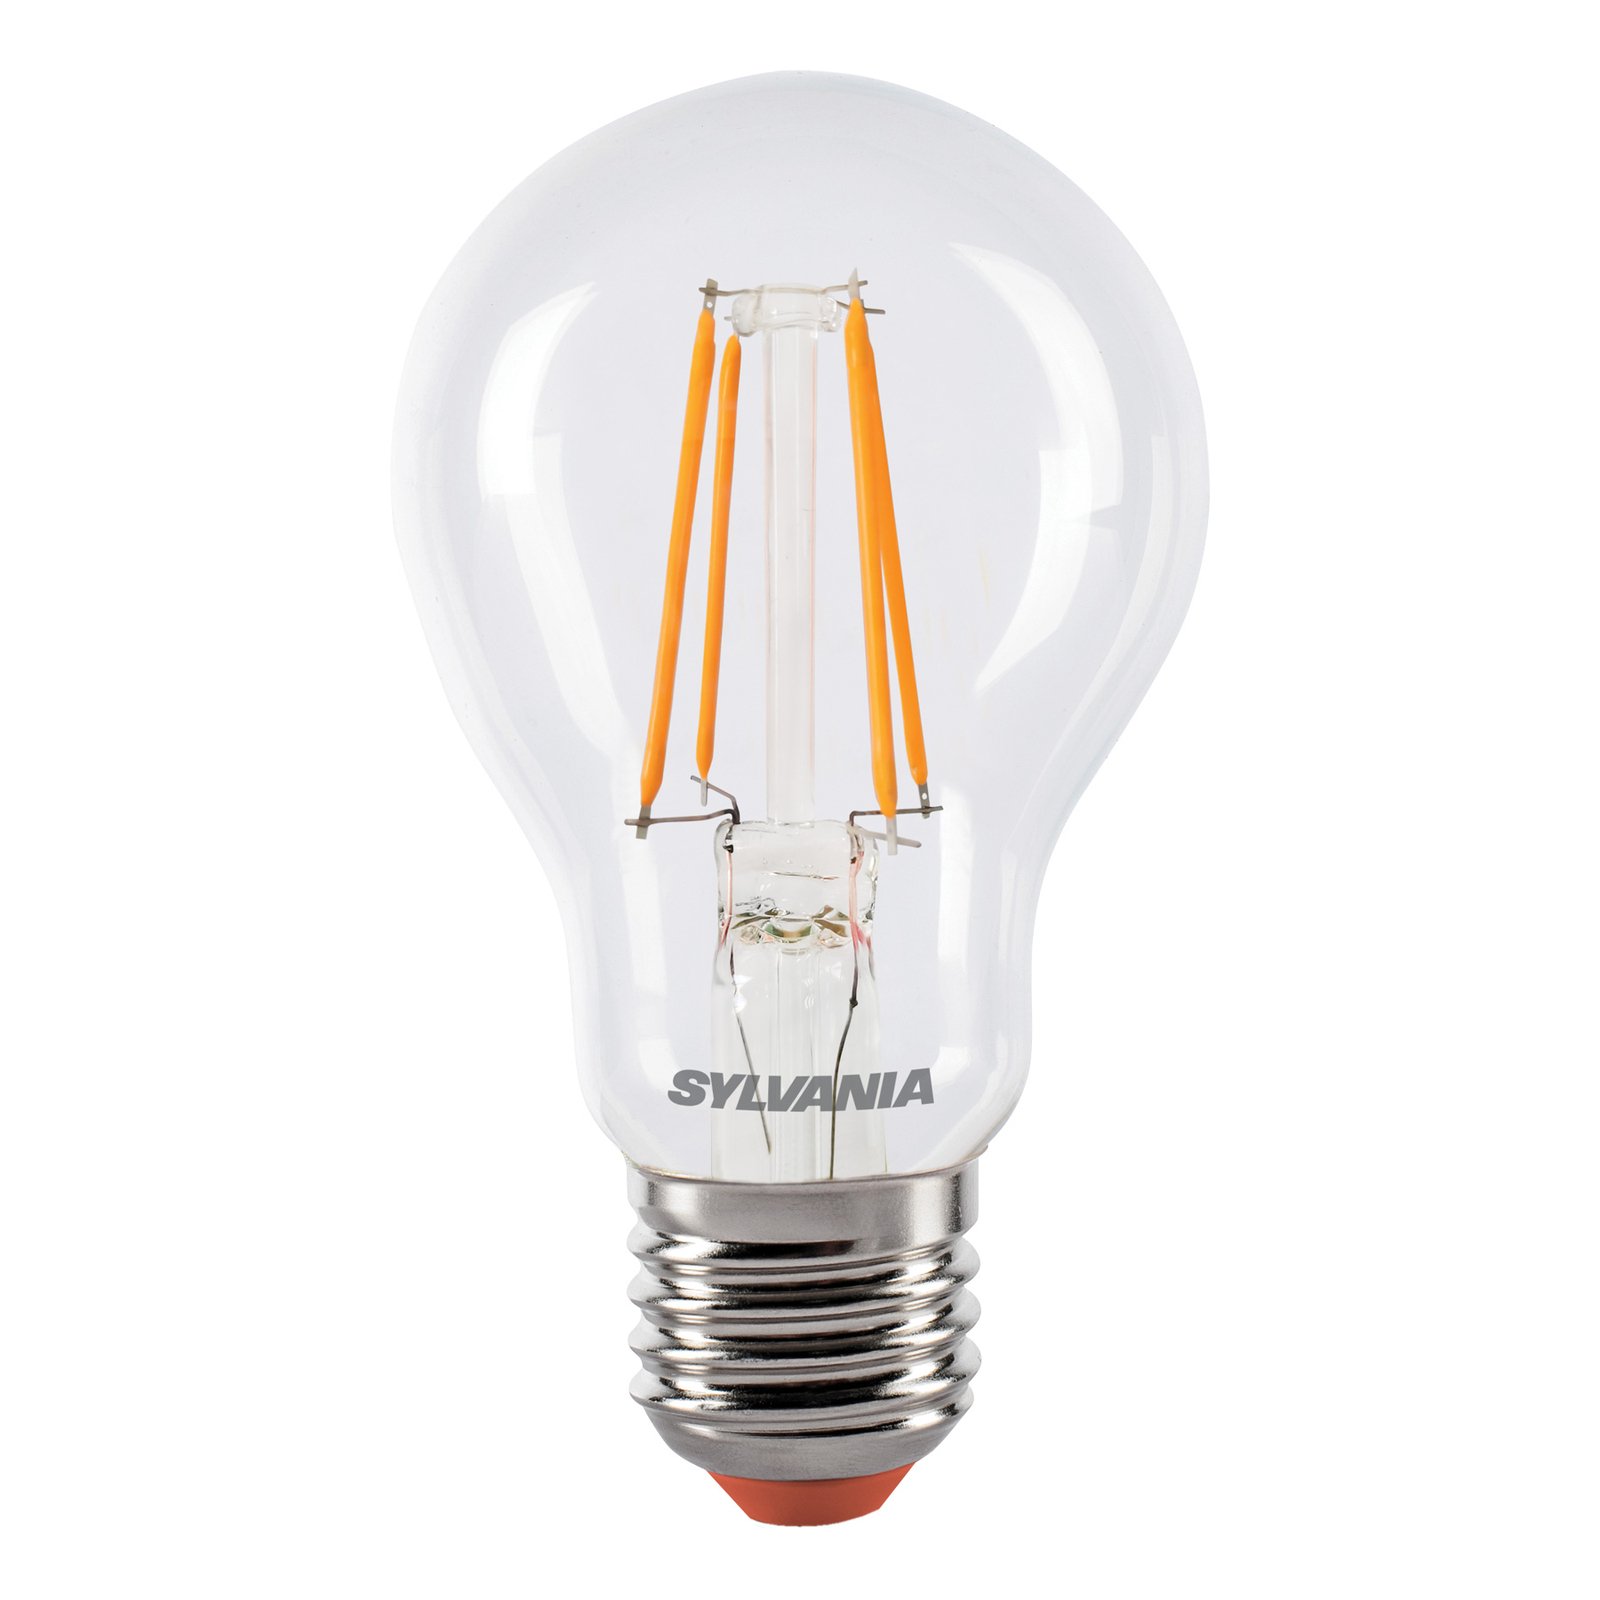 Sylvania ToLEDo Retro LED lámpa E27 4.1W narancssárga színben